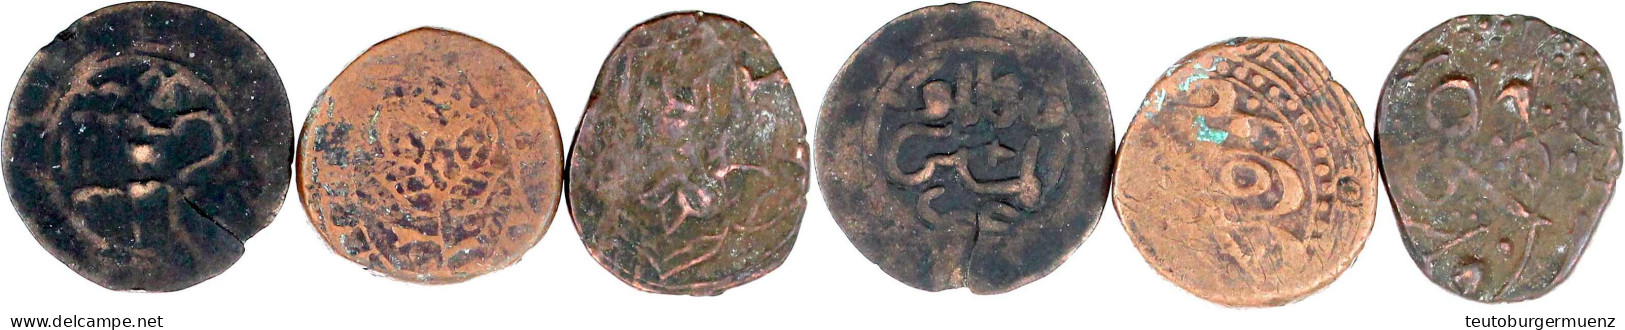 3 Islamische Kupfermünzen, Vermutlich Georgien Oder Iran. Schön Bis Sehr Schön - Orientalische Münzen